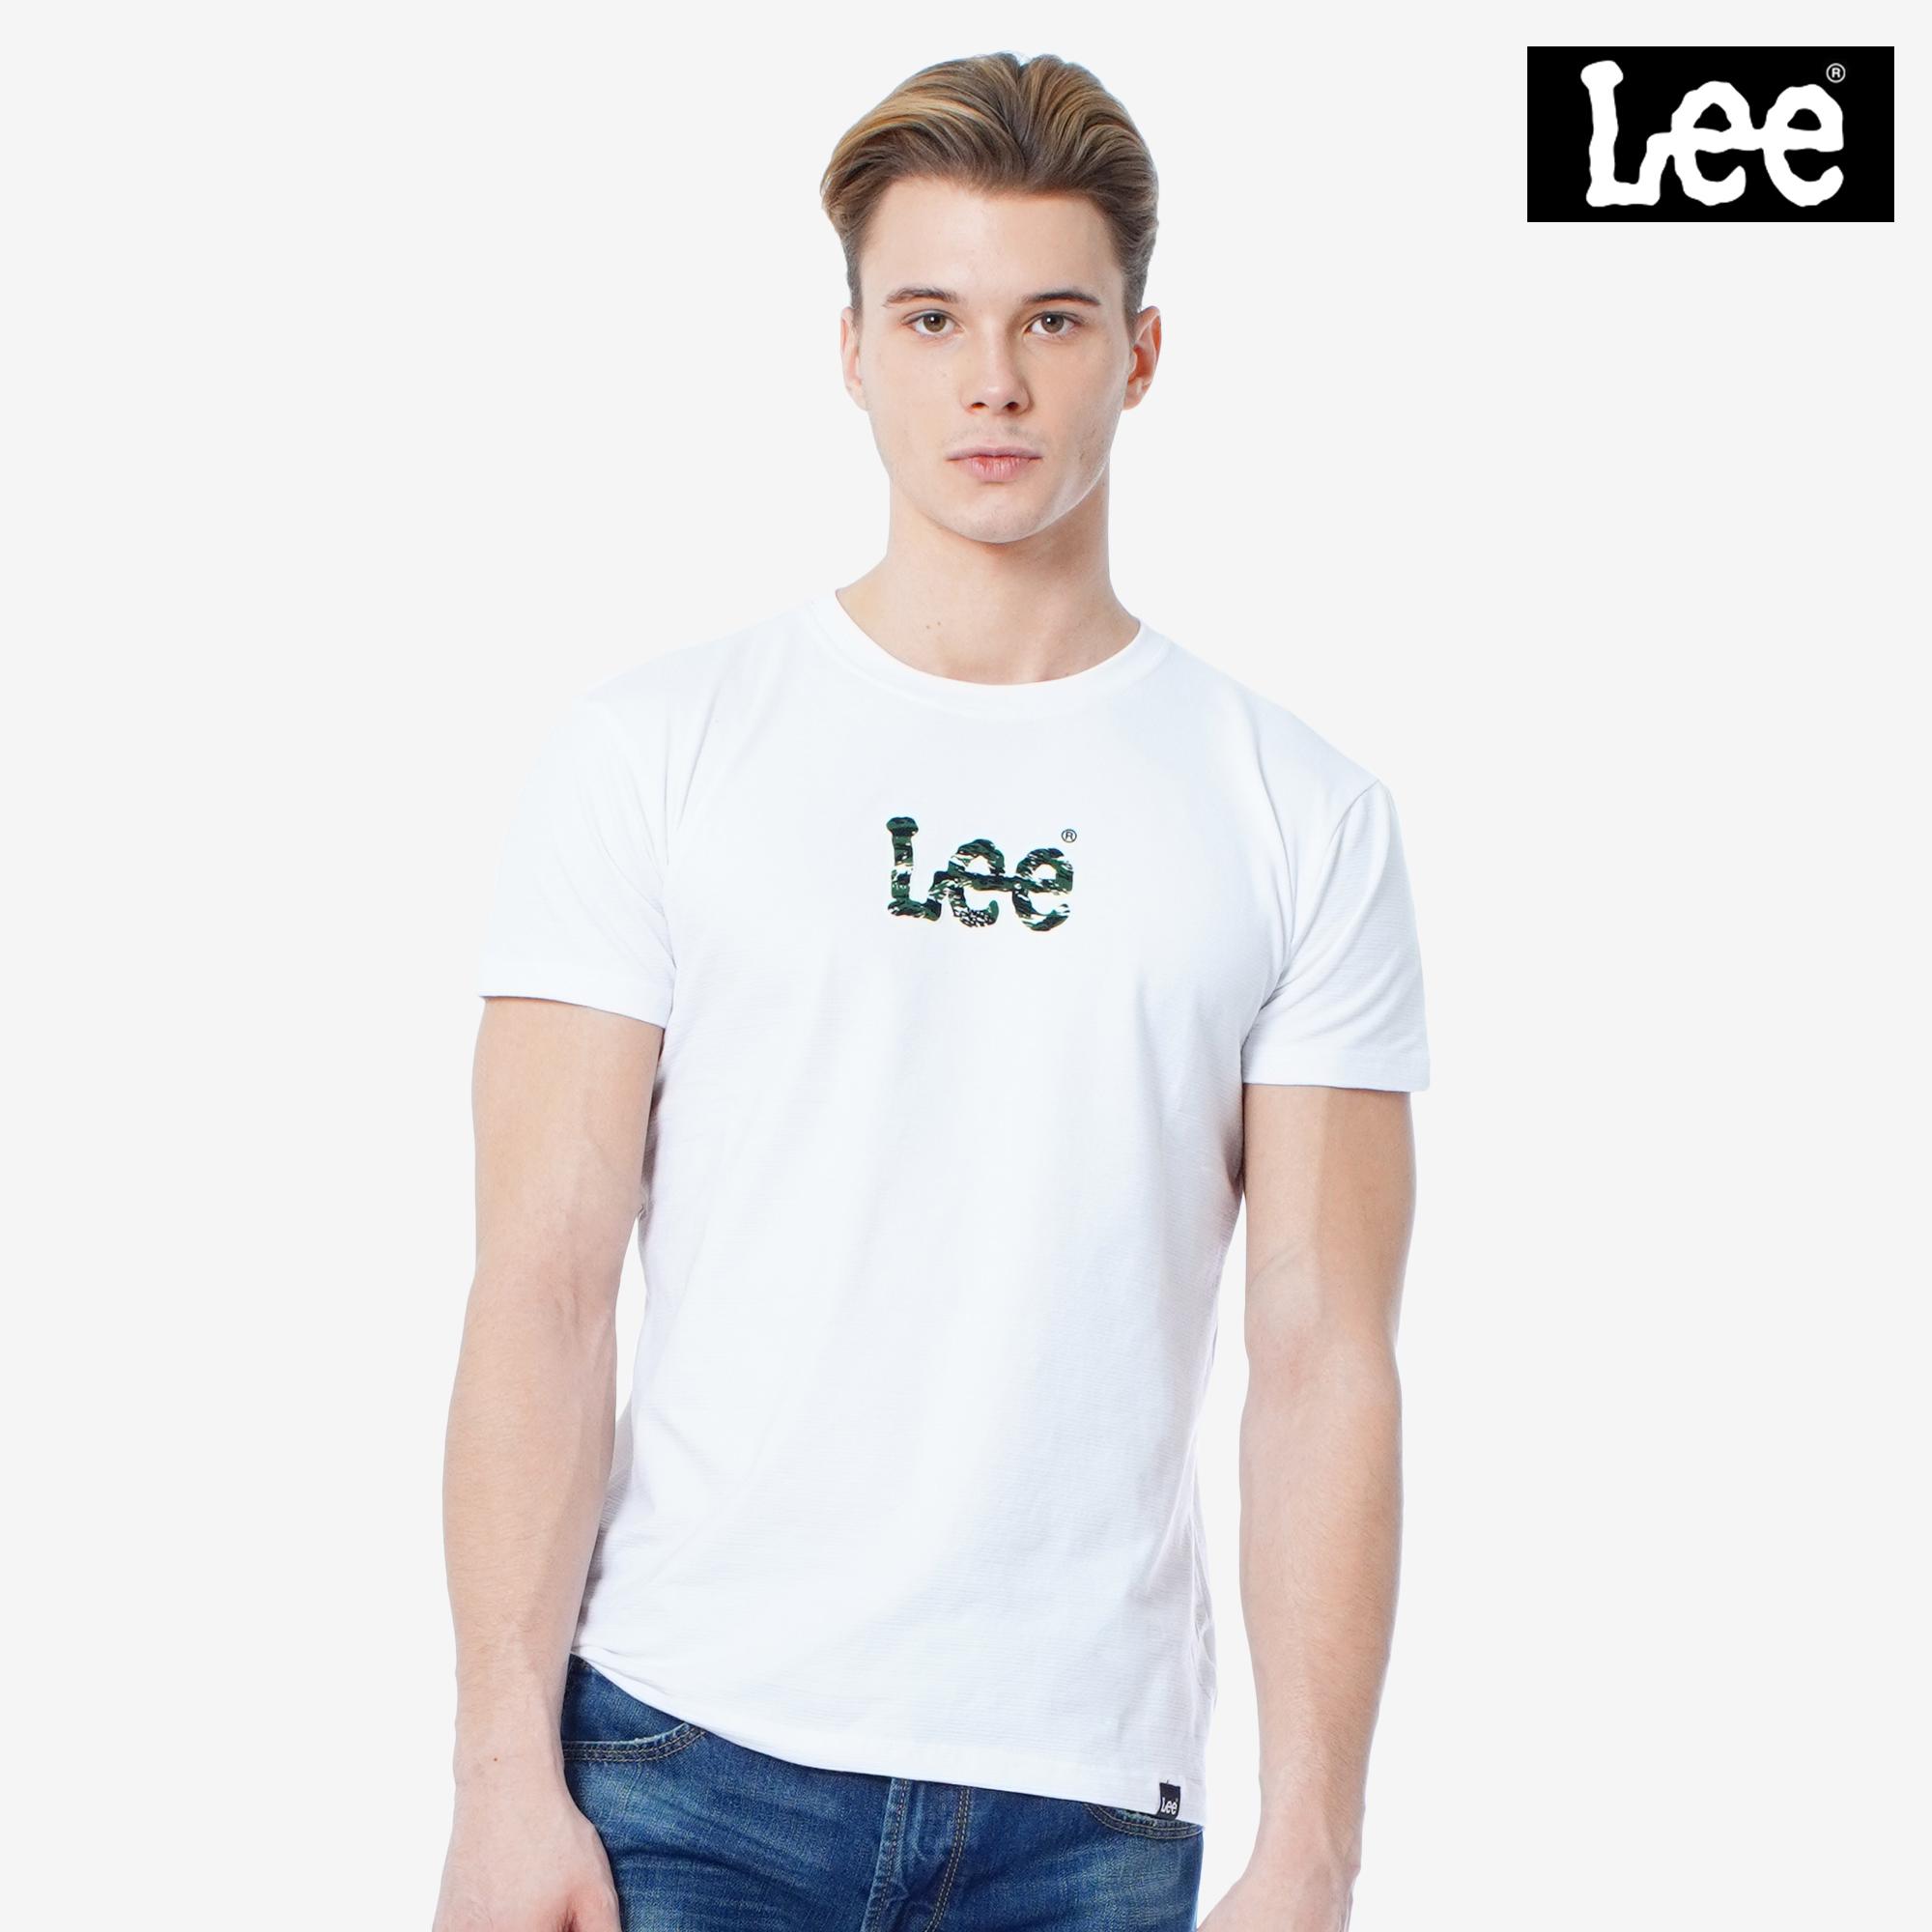 Lee T Shirt Original SAVE 33% - mpgc.net